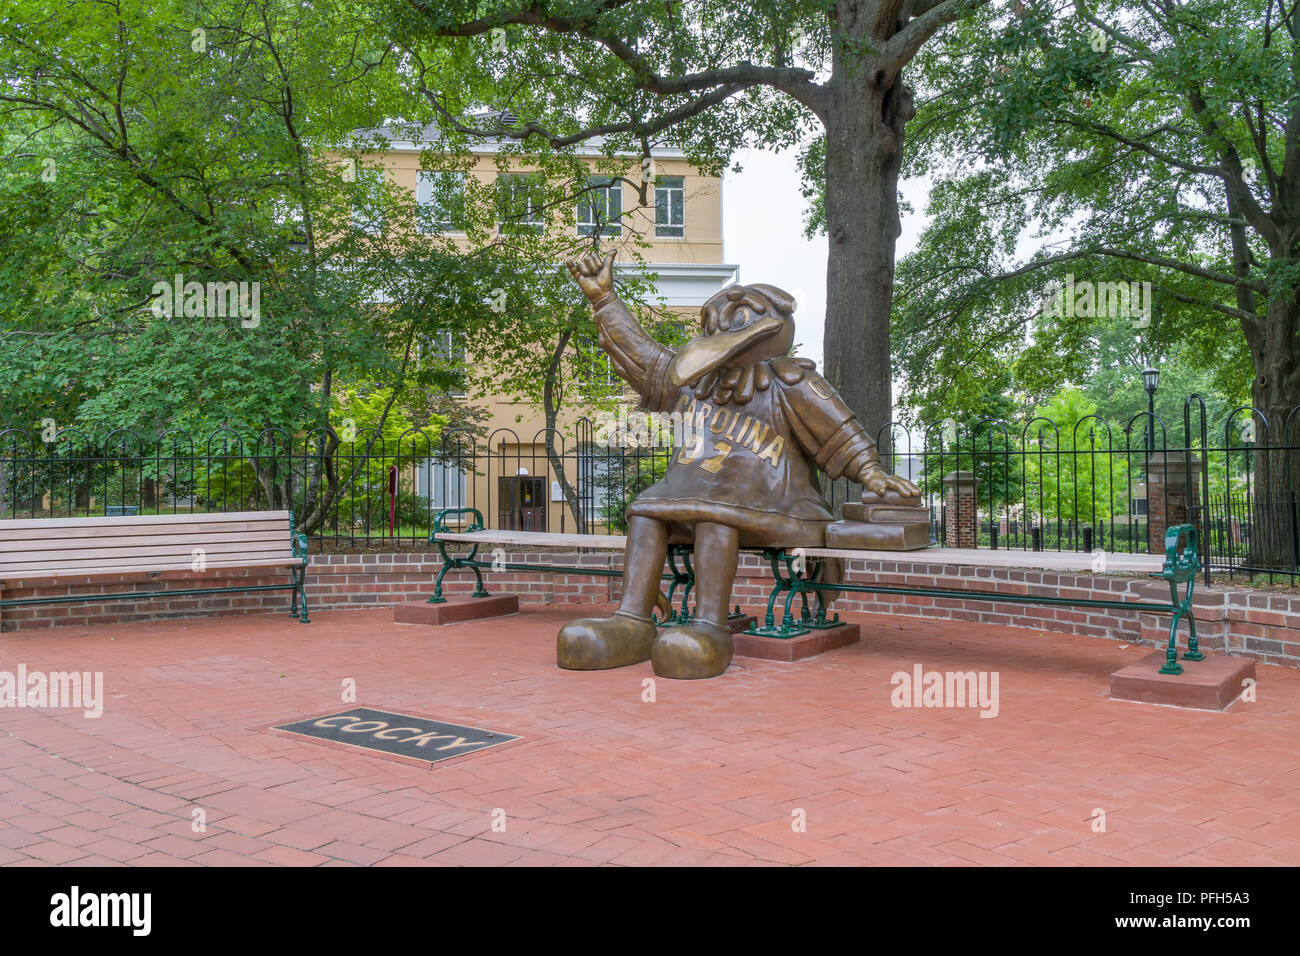 COLUMBIA, SC/USA Juni 5, 2018: Die kampfhahn Maskottchen Statue auf dem Campus der Universität von South Carolina dreist. Stockfoto